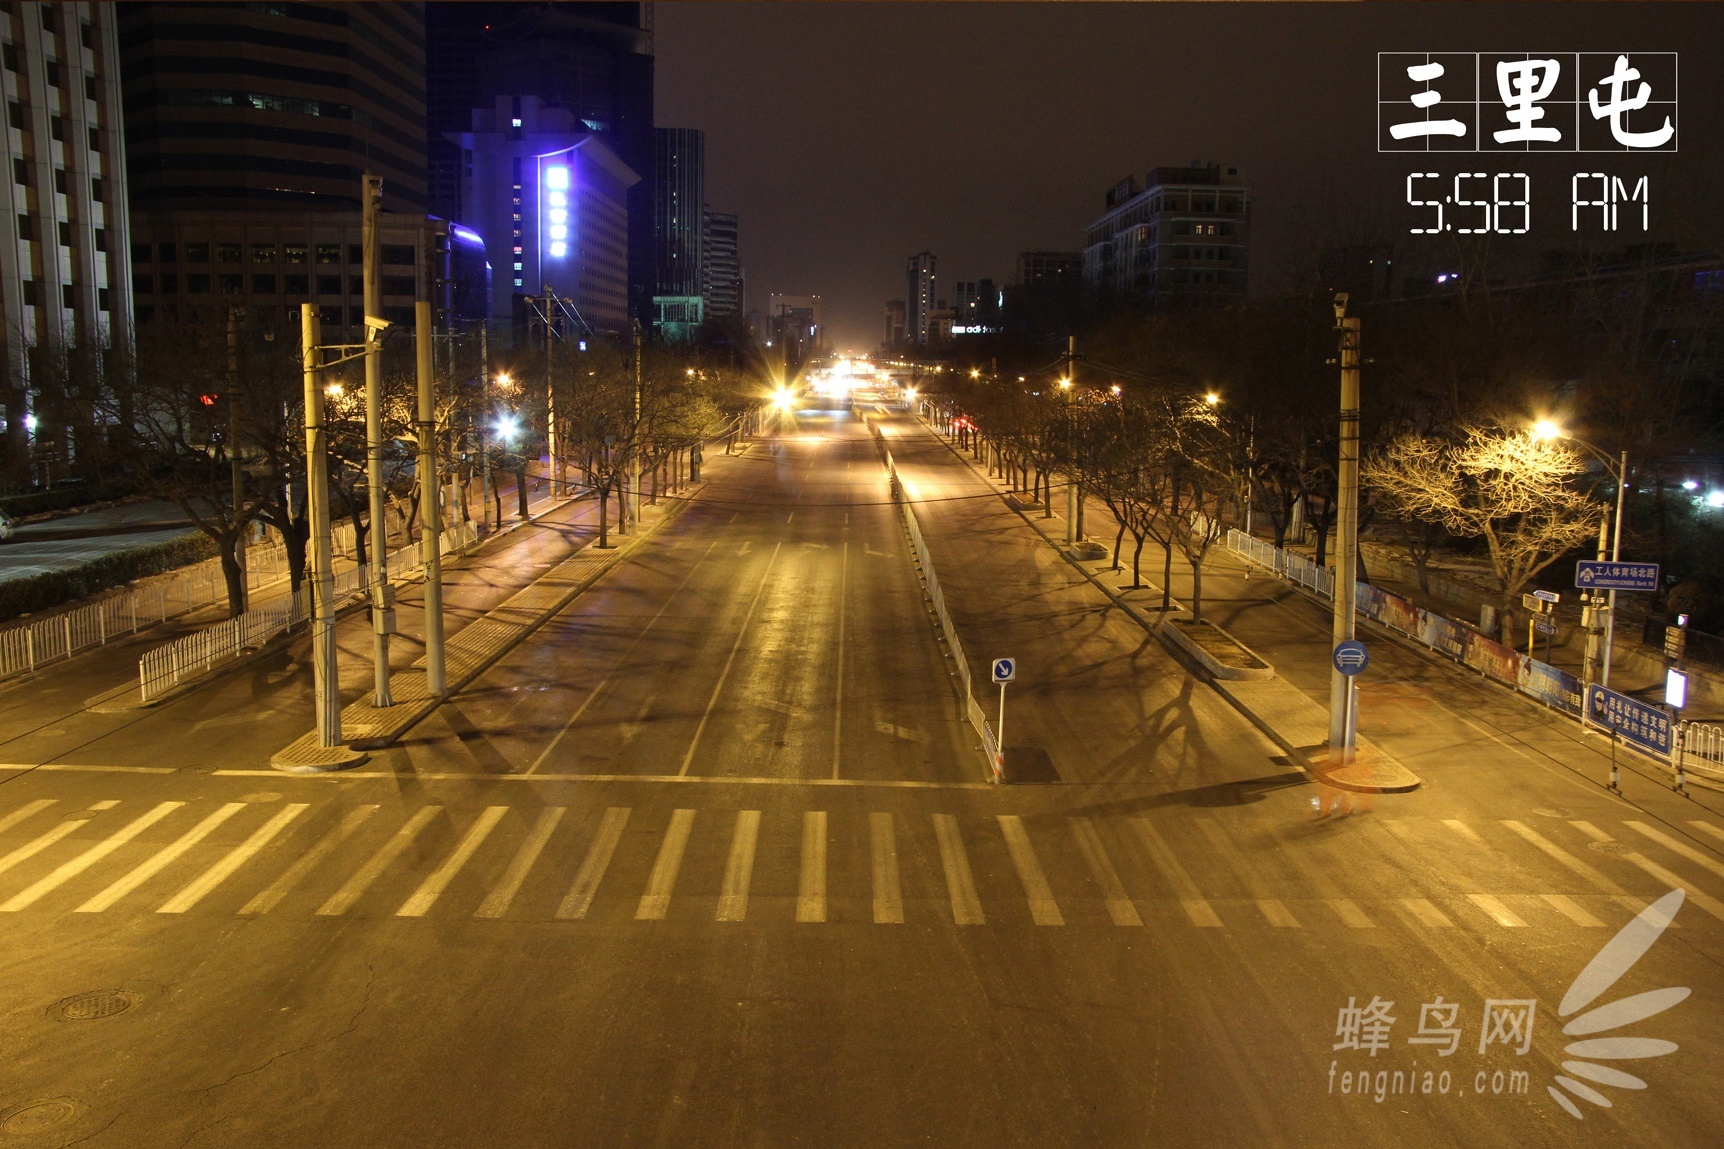 今晨北京严重拥堵多路段飘红 时速低于20公里的路段达75条 | 北晚新视觉